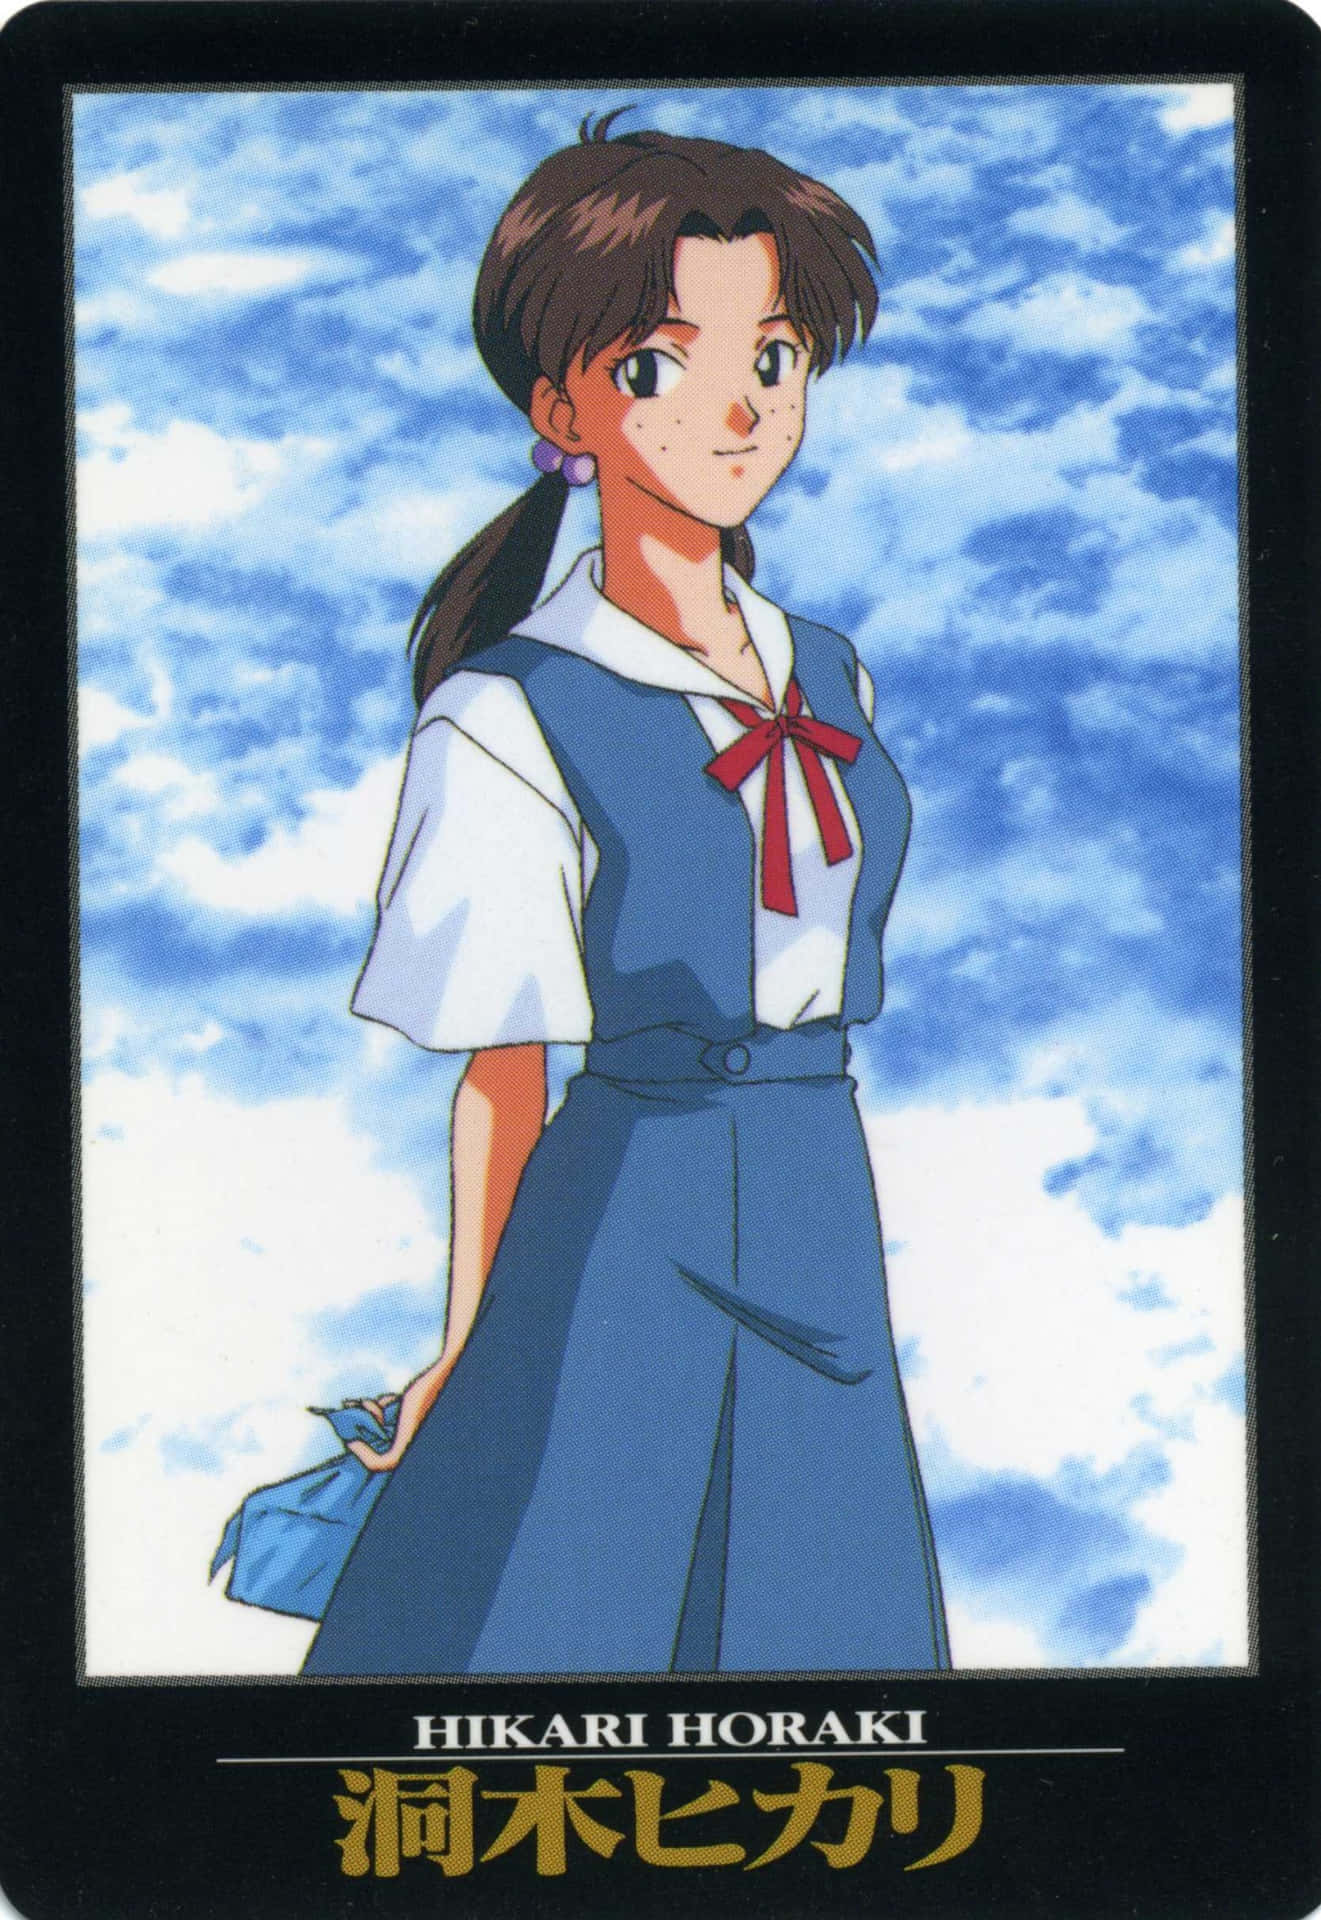 Hikari Horaki - Smiling in School Uniform Wallpaper